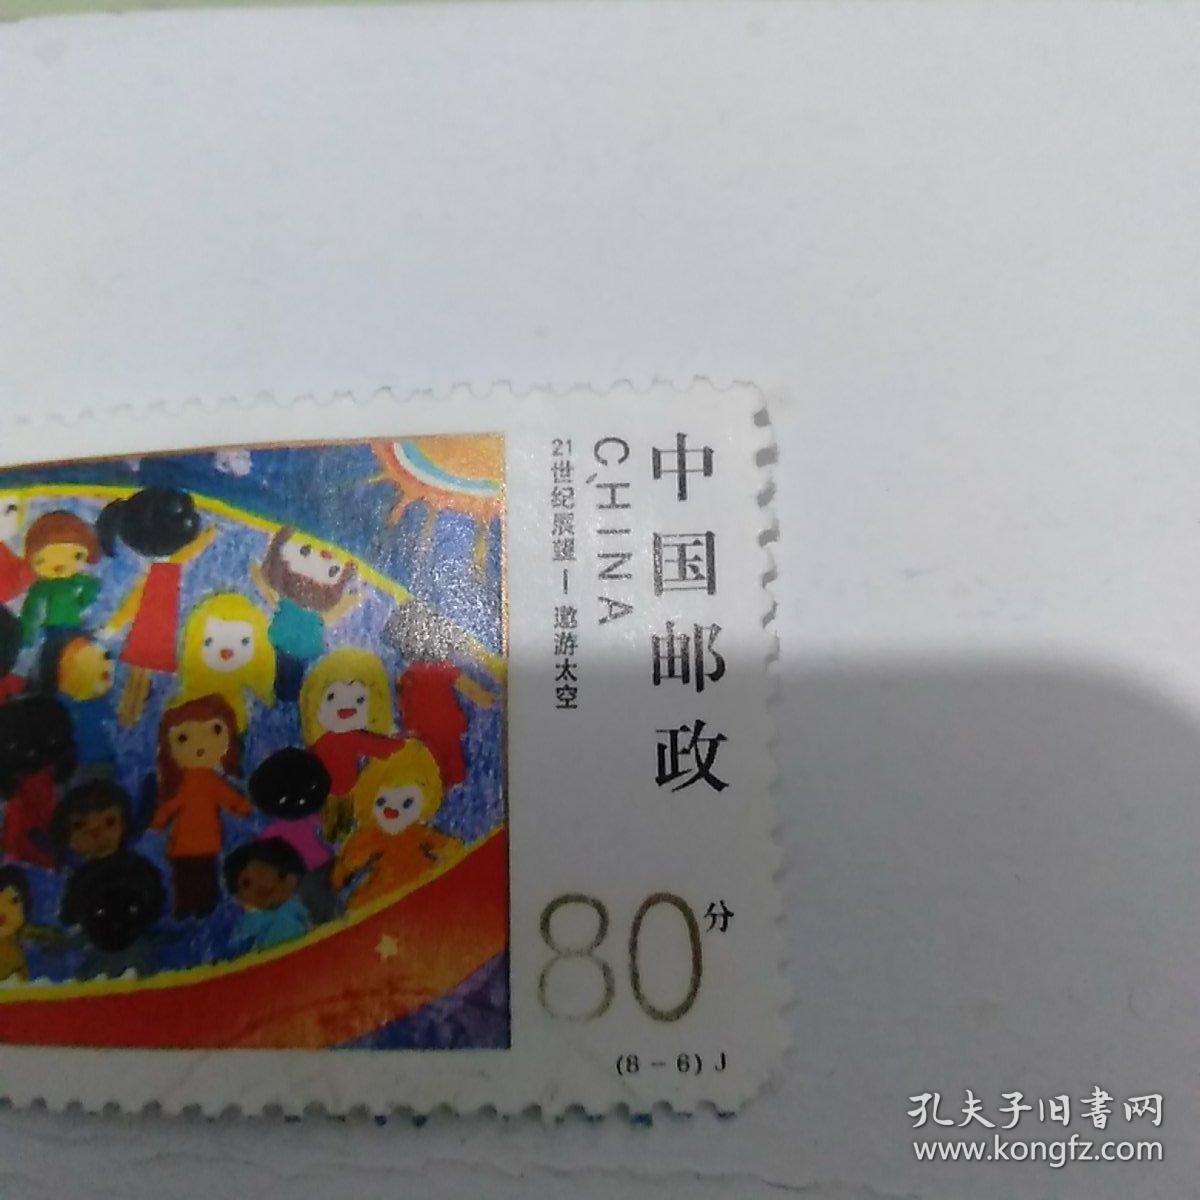 邮票   2000-11  21世纪展望——遨游太空(8-6)J